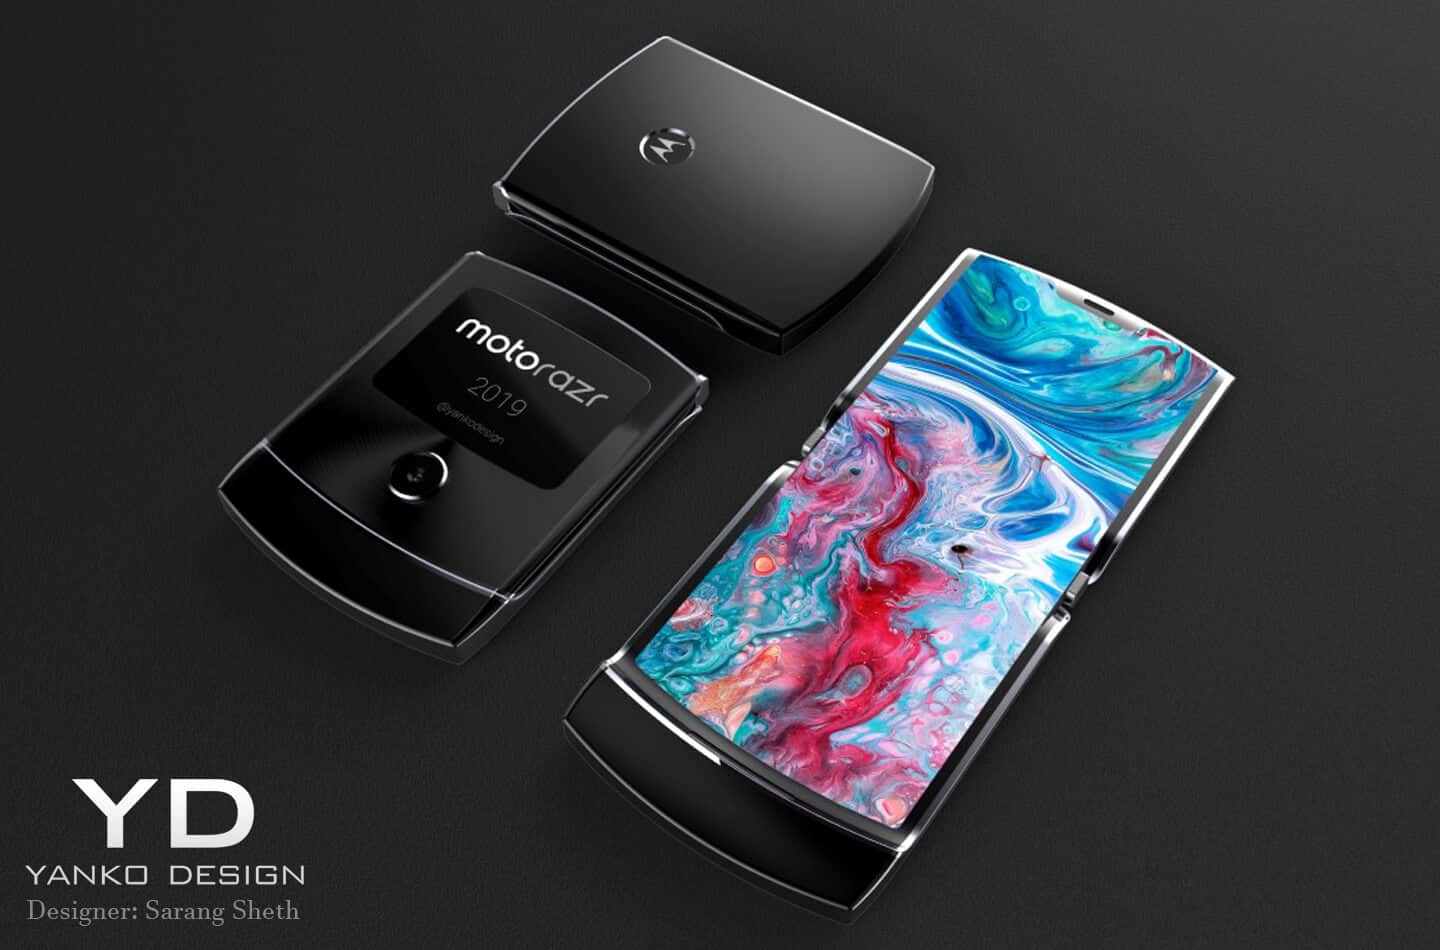 Kejutan? Internet memiliki foto misterius Motorola baru! 2